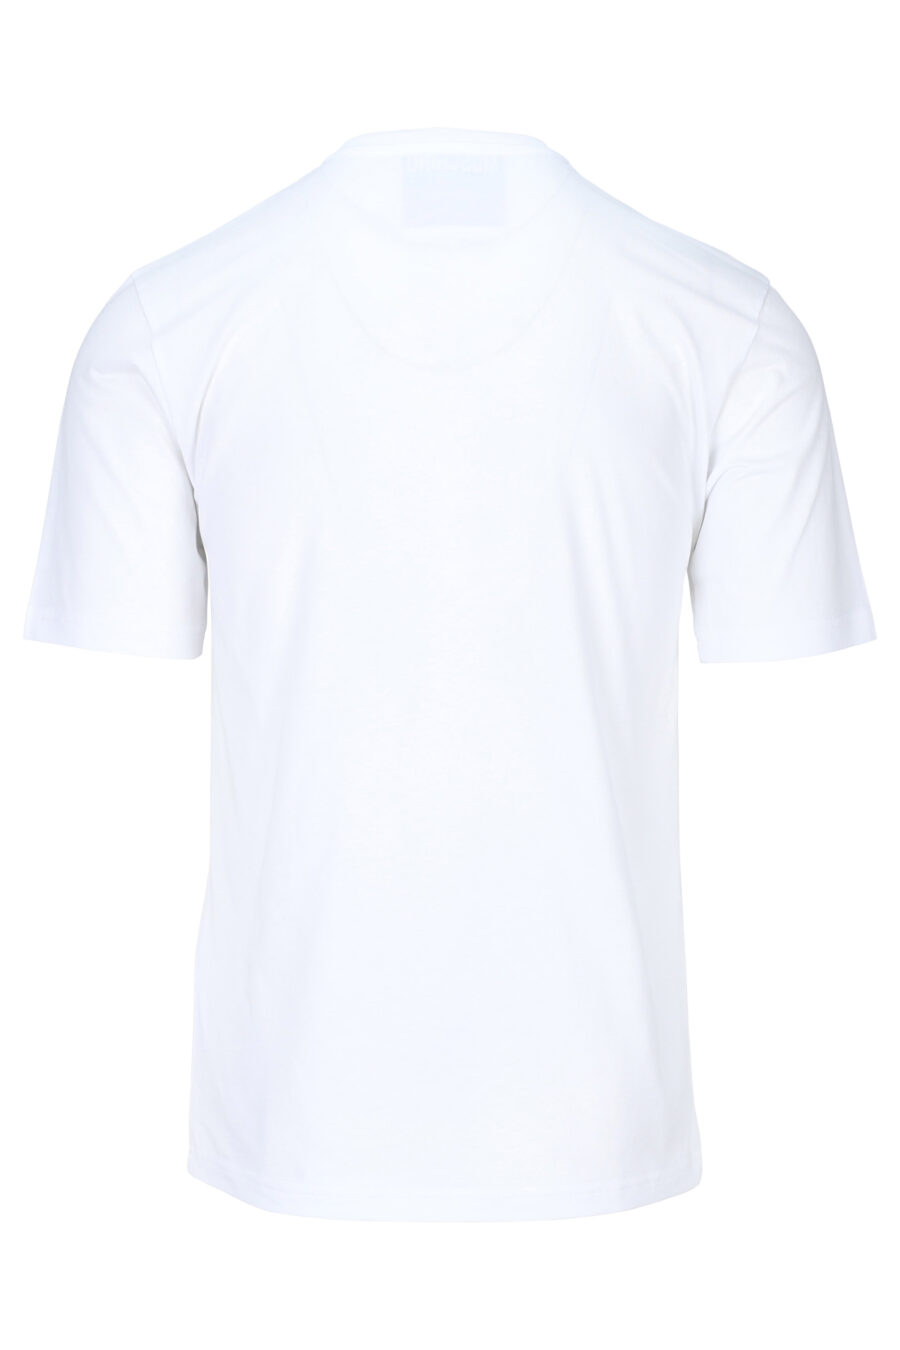 T-shirt blanc avec maxilogue noir usé - 889316937954 1